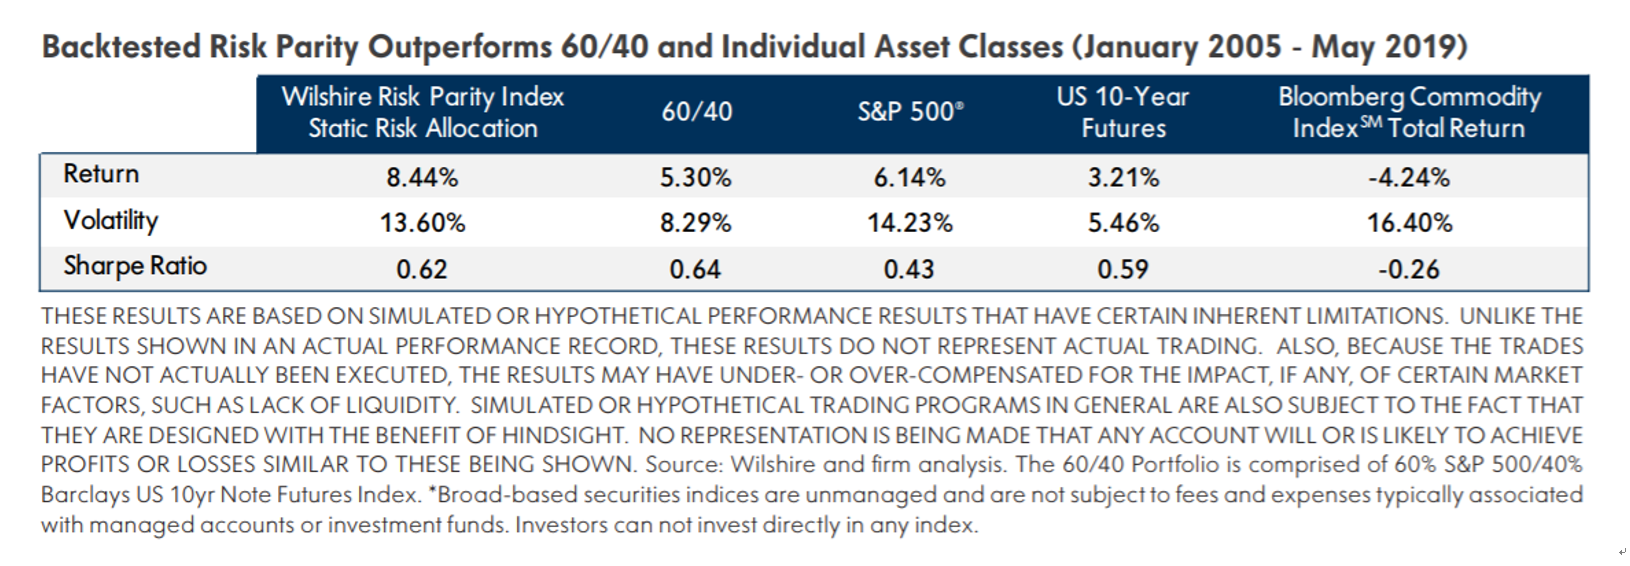 回测风险平价指数比60/40投资组合和单独资产类别表现好（2005年1月-2019年5月）